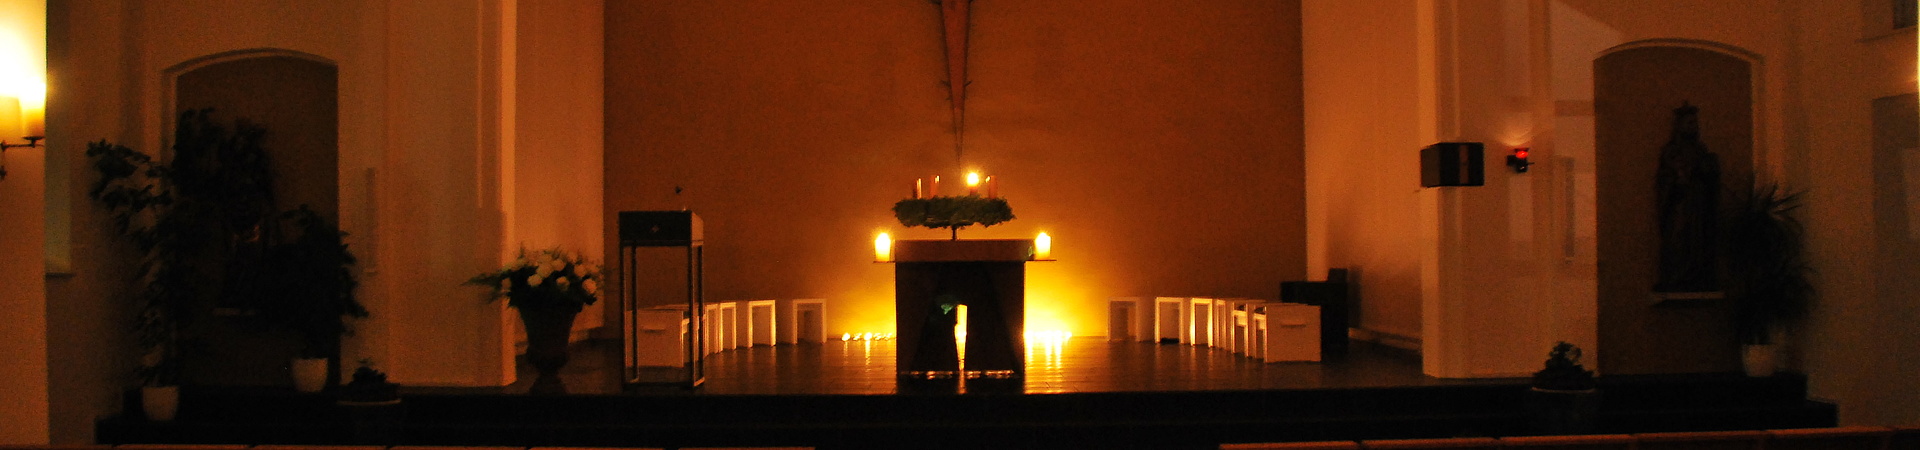 Vigilfeier in St Marien Bad Essen - Kerzen erleuchten die Kirche